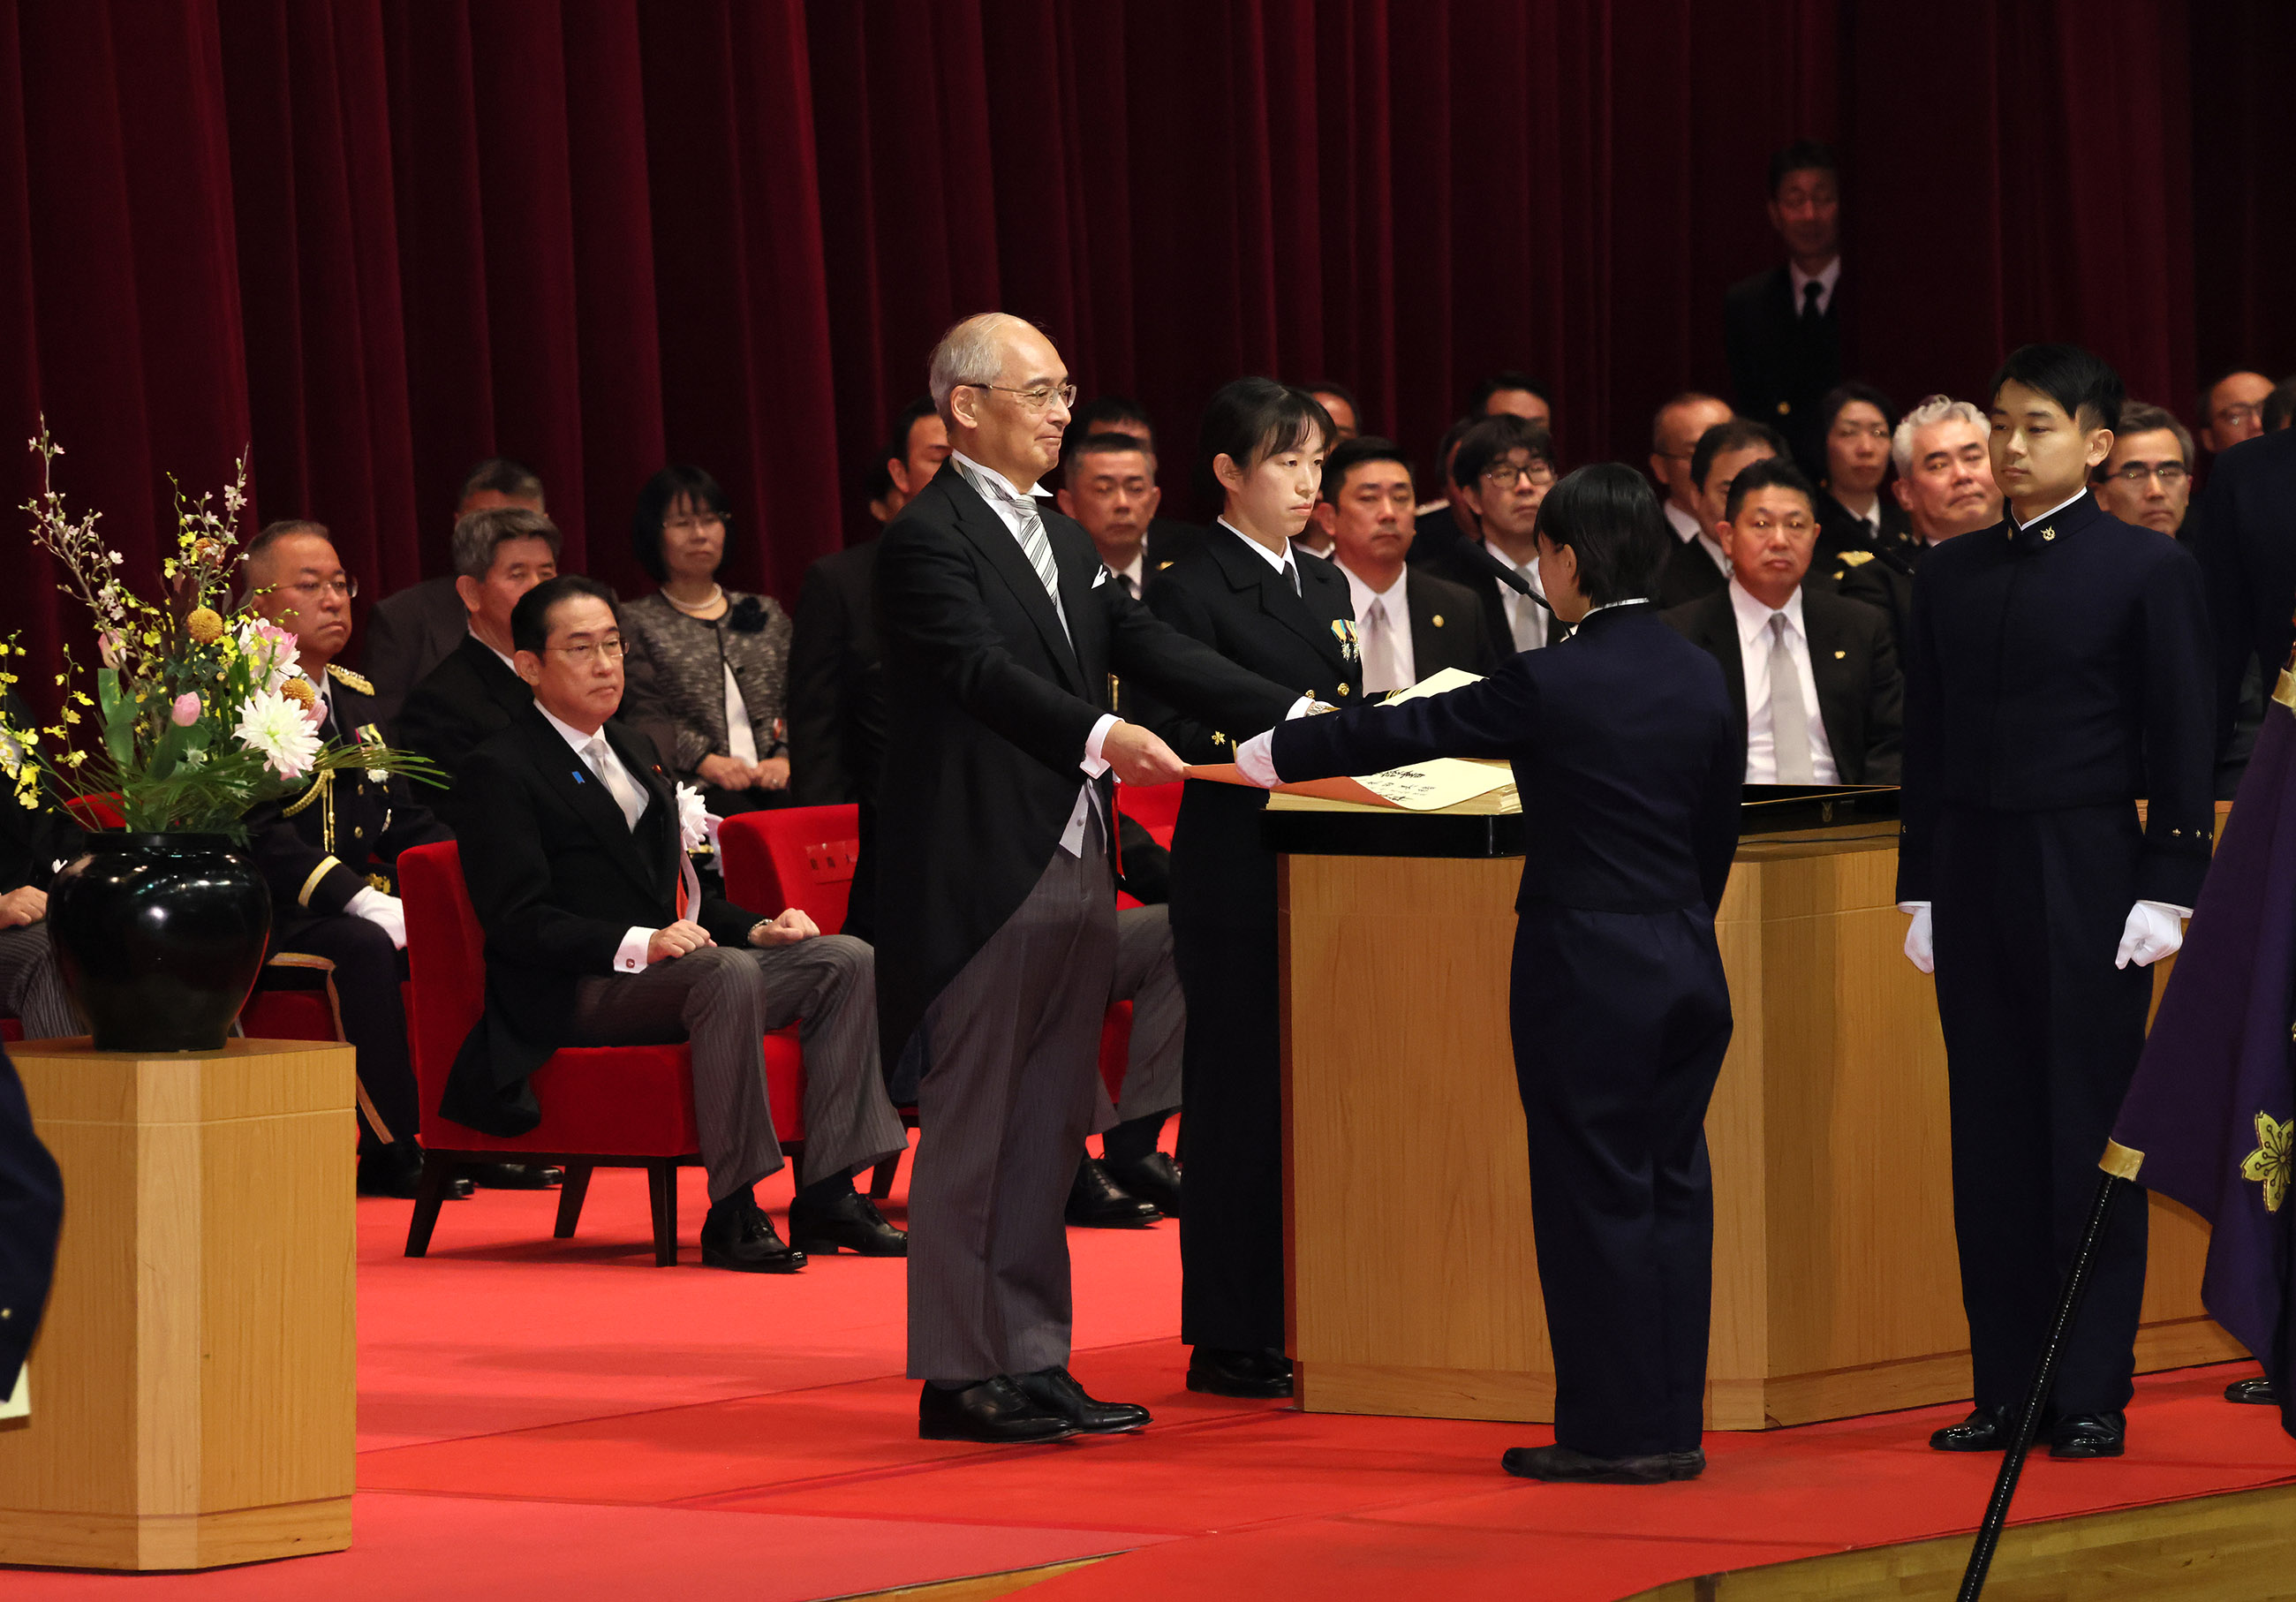 Prime Minister Kishida joining the diploma presentation